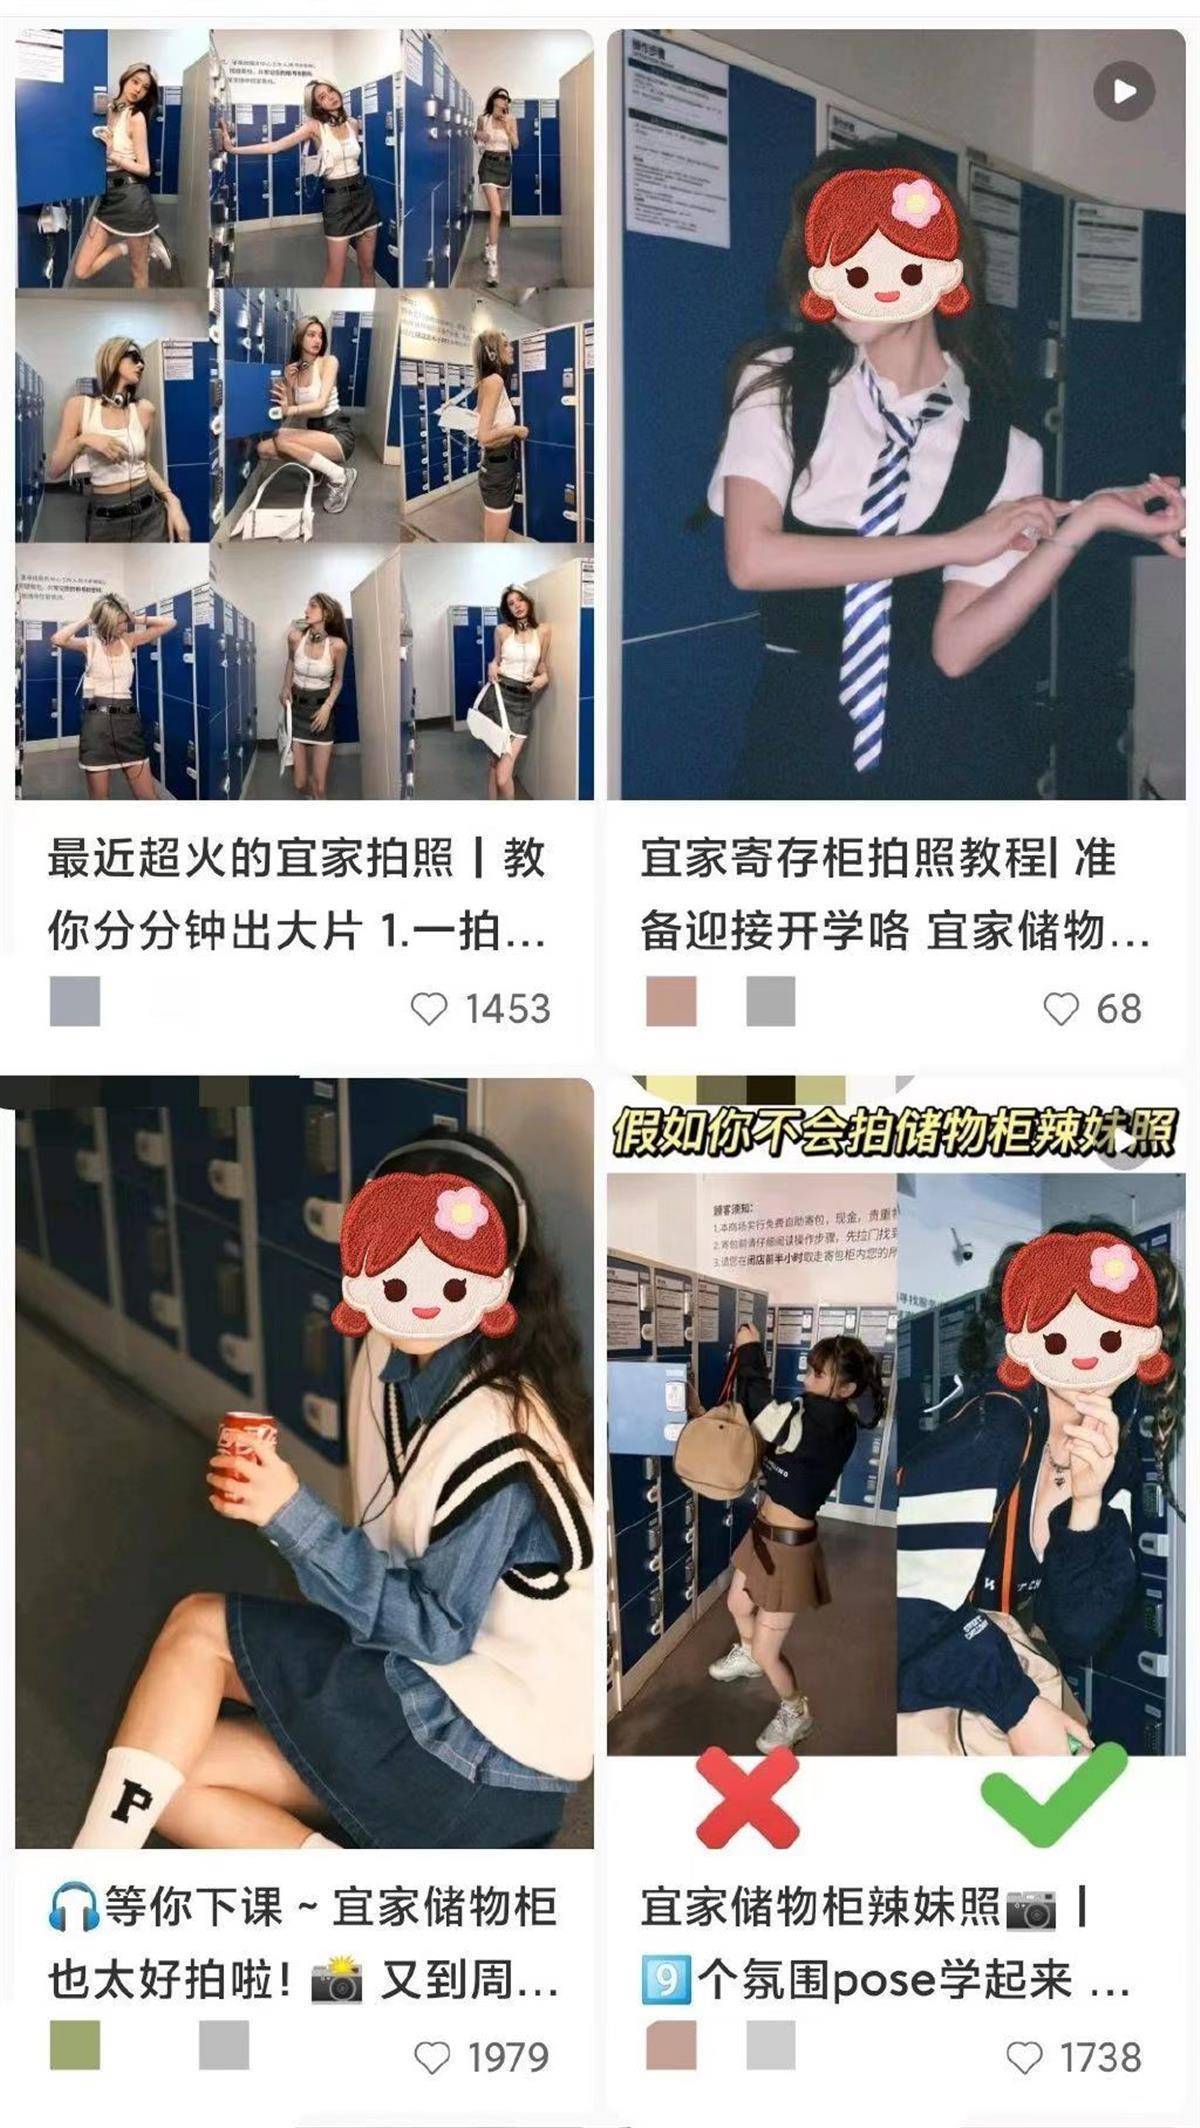 极目锐评|上海宜家储物柜区禁拍“网红照”引争议，应尊重“不想蹭这个流量”的选择